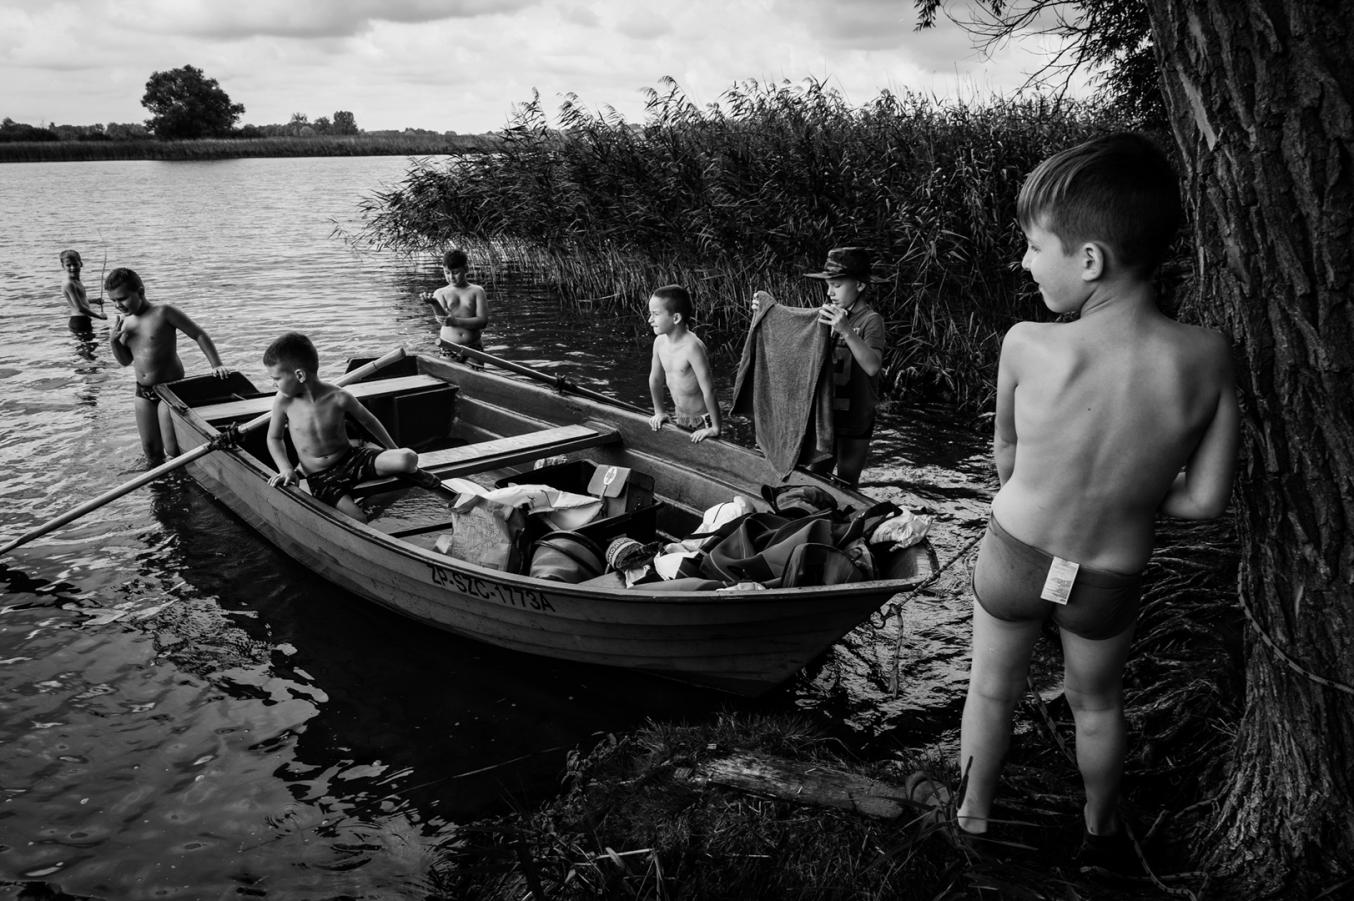 Czarno-biała fotografia. Chłopcy na brzegu jeziora stoją, jeden siedzi w łódce